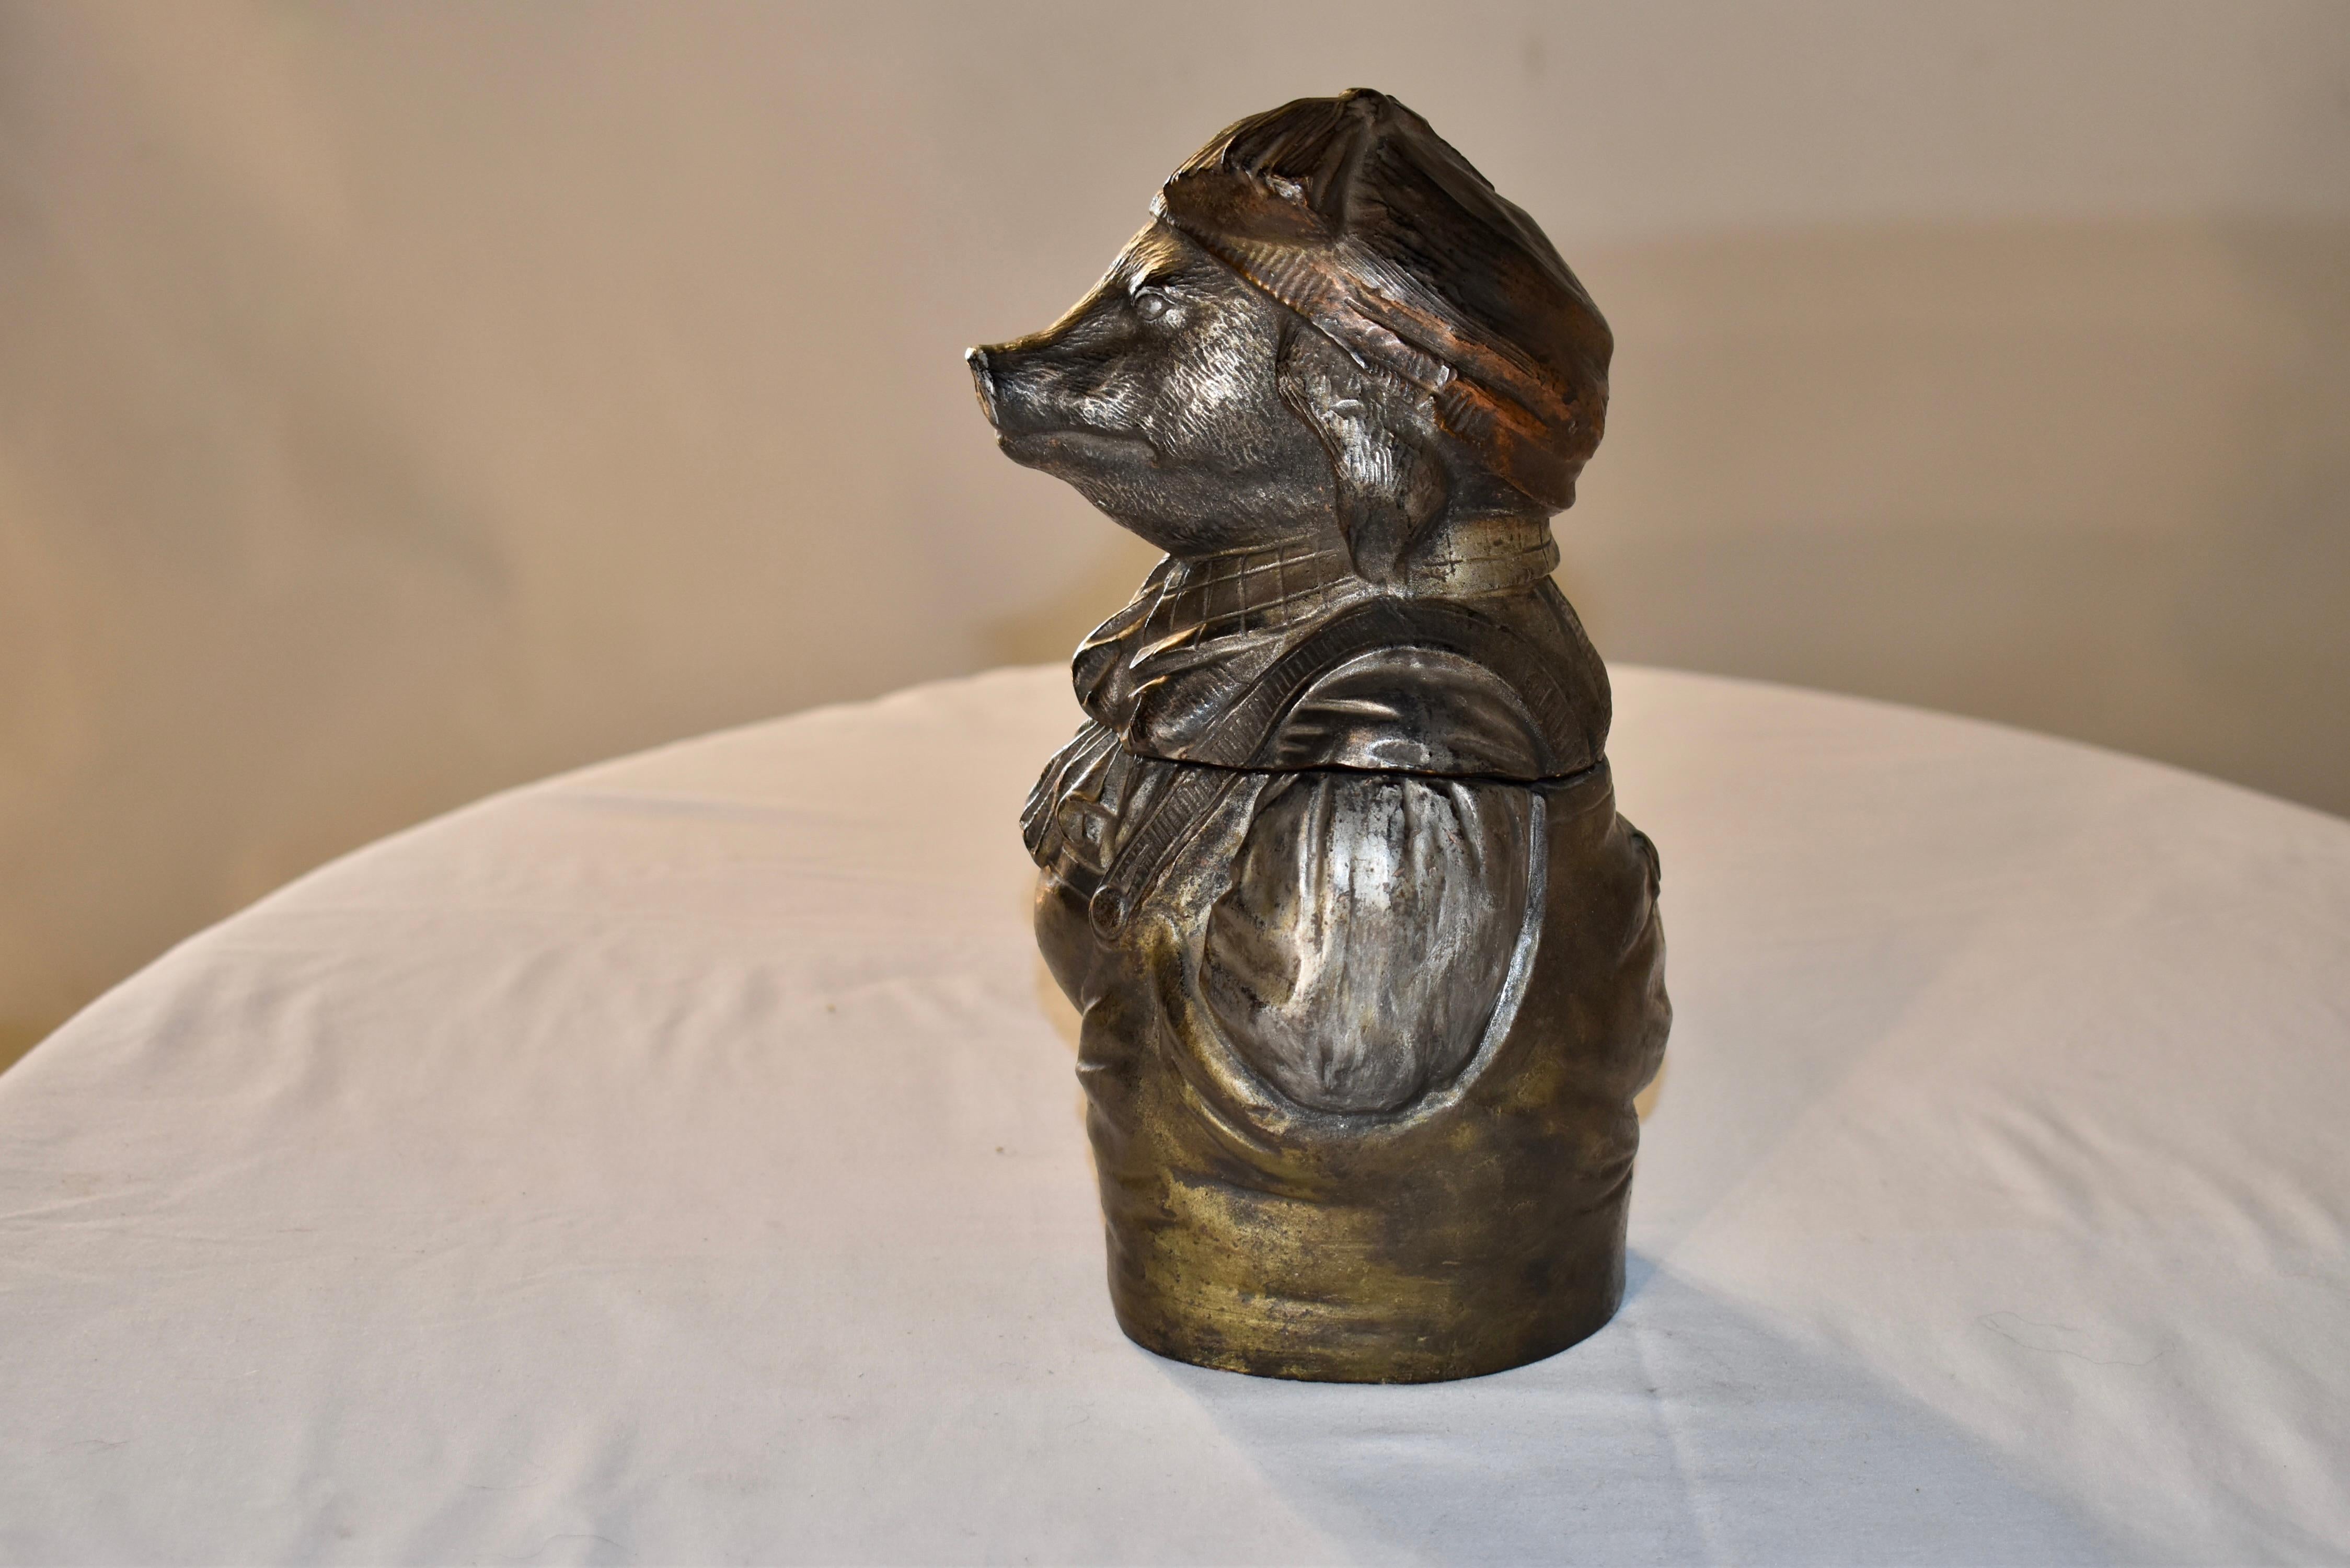 Terrakotta-Tabakdose aus Österreich aus dem 19. Jahrhundert mit wunderschöner Metallglasur. Das Schwein trägt einen Hut mit Fransen und eine Latzhose mit Kragenhemd und Halstuch. Er hat einen schönen Gesichtsausdruck und ist in warmen Metallic-Gold-